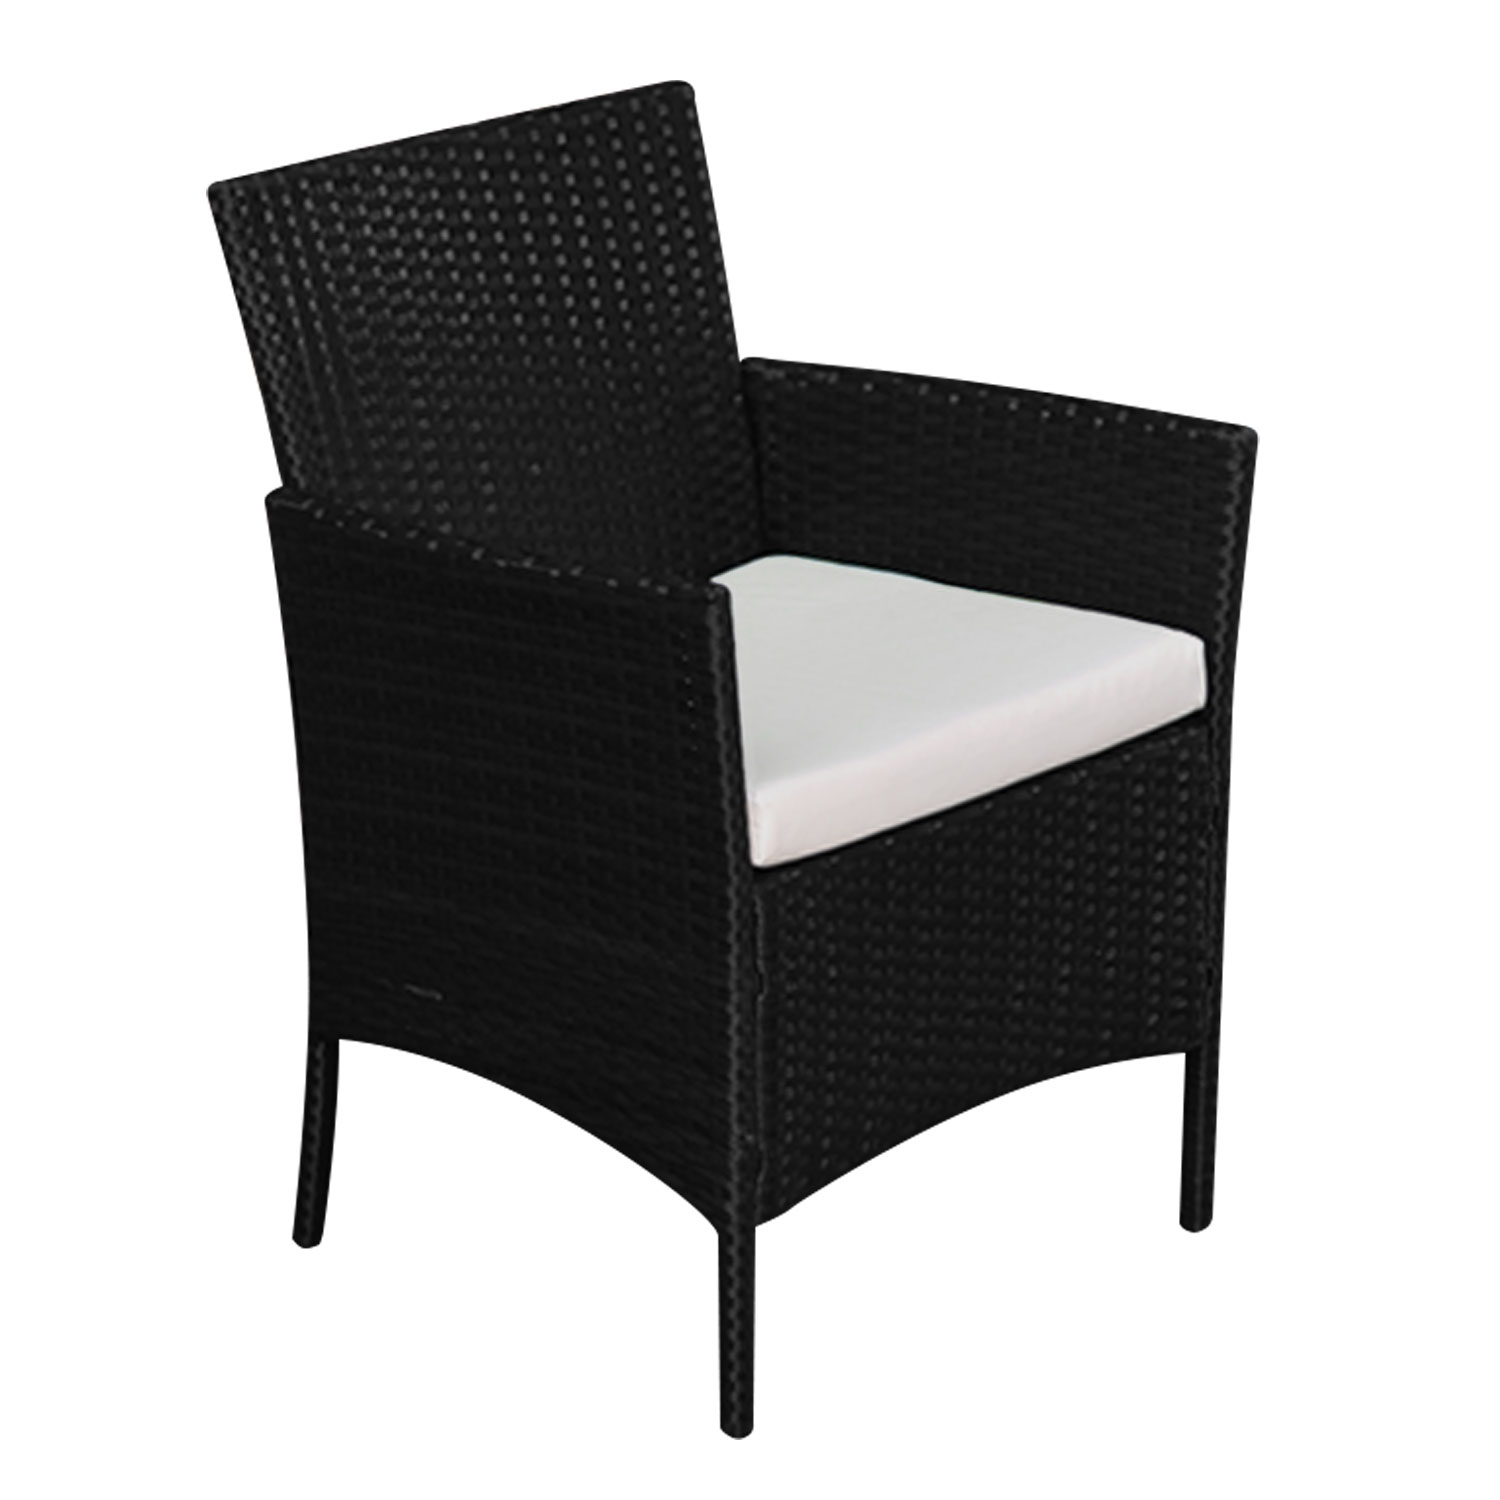 Gartenmöbel CORFOU aus schwarzem Kunstharzgeflecht, 4 Sitzplätze - beige Kissen